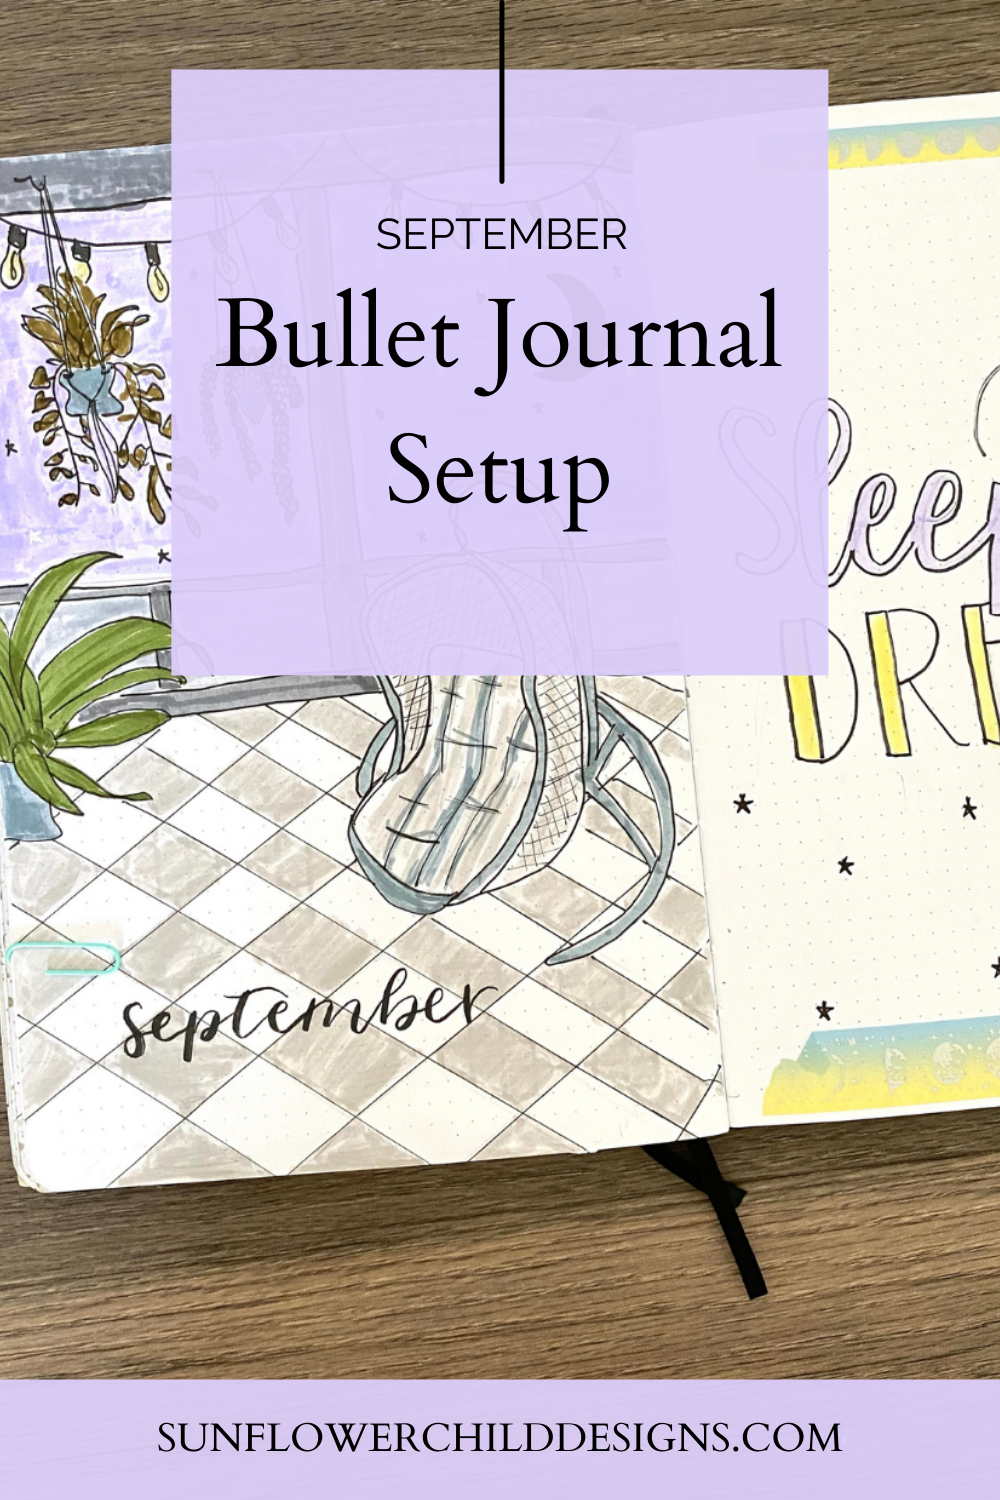 Witchy Bullet Journal September Bullet Journal Ideas